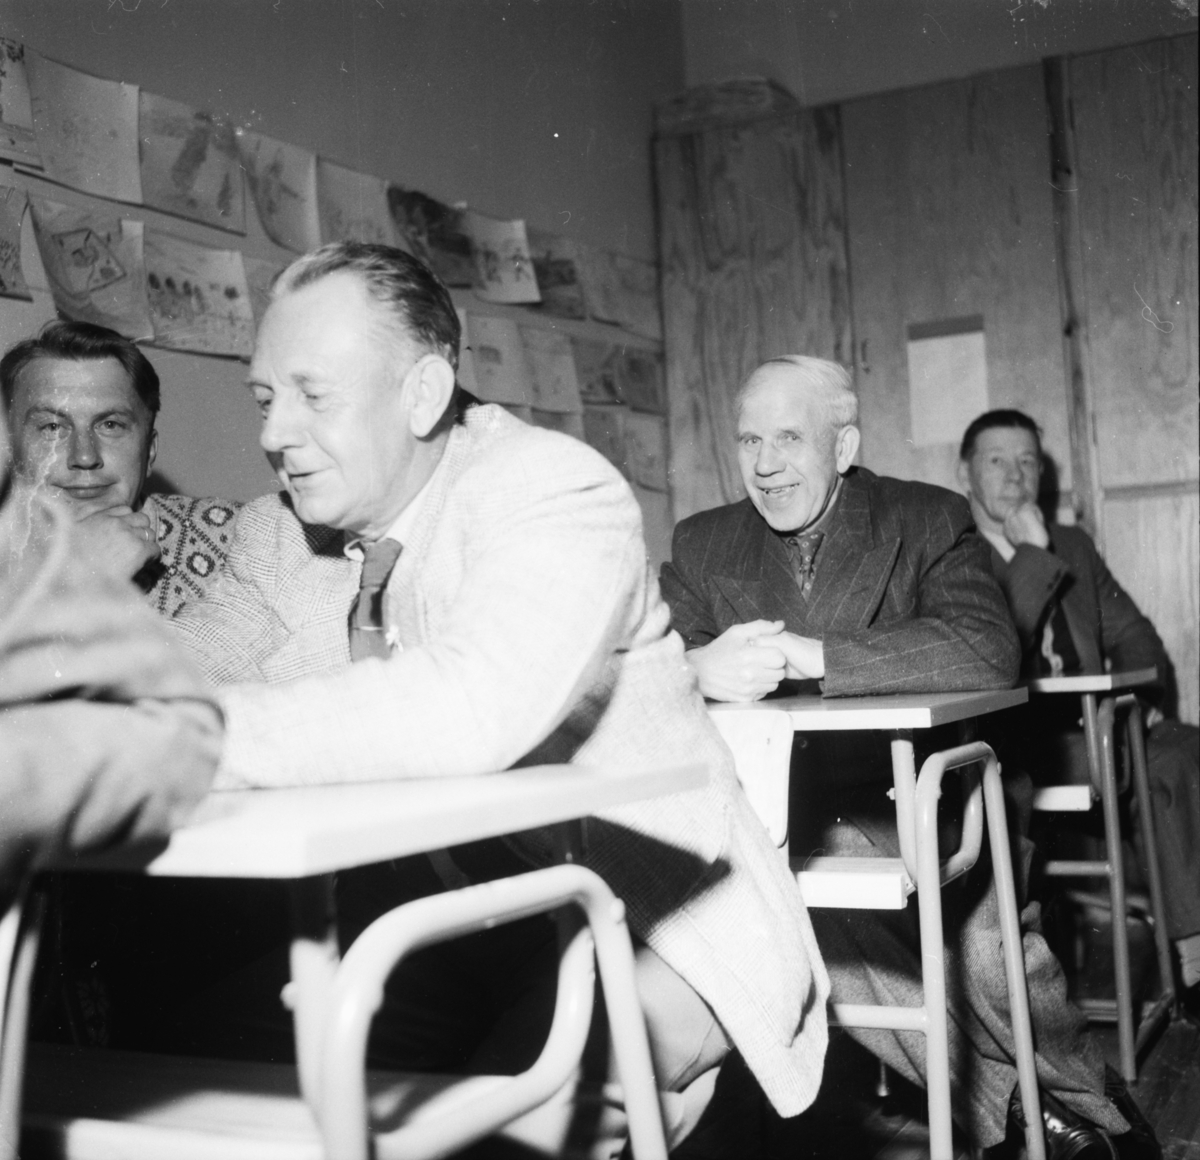 Vardens arkiv. "Klosterskogen velforening har møte på skolen"  05.05.1954